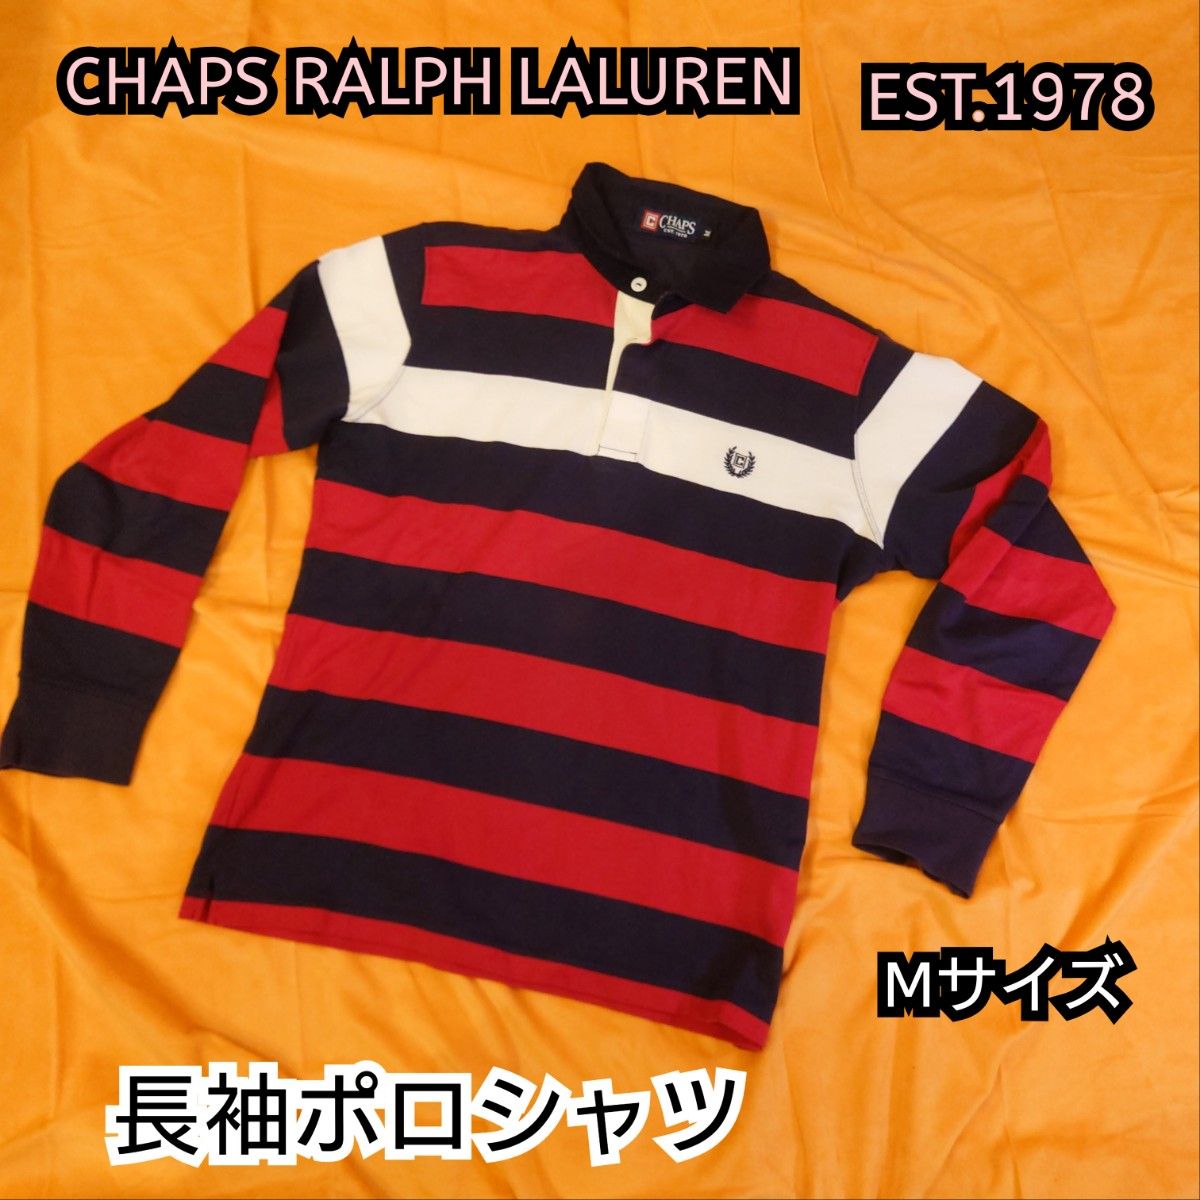 ◆最終値下げ◆【古着並品】Chaps ralph lauren 長袖ポロシャツ